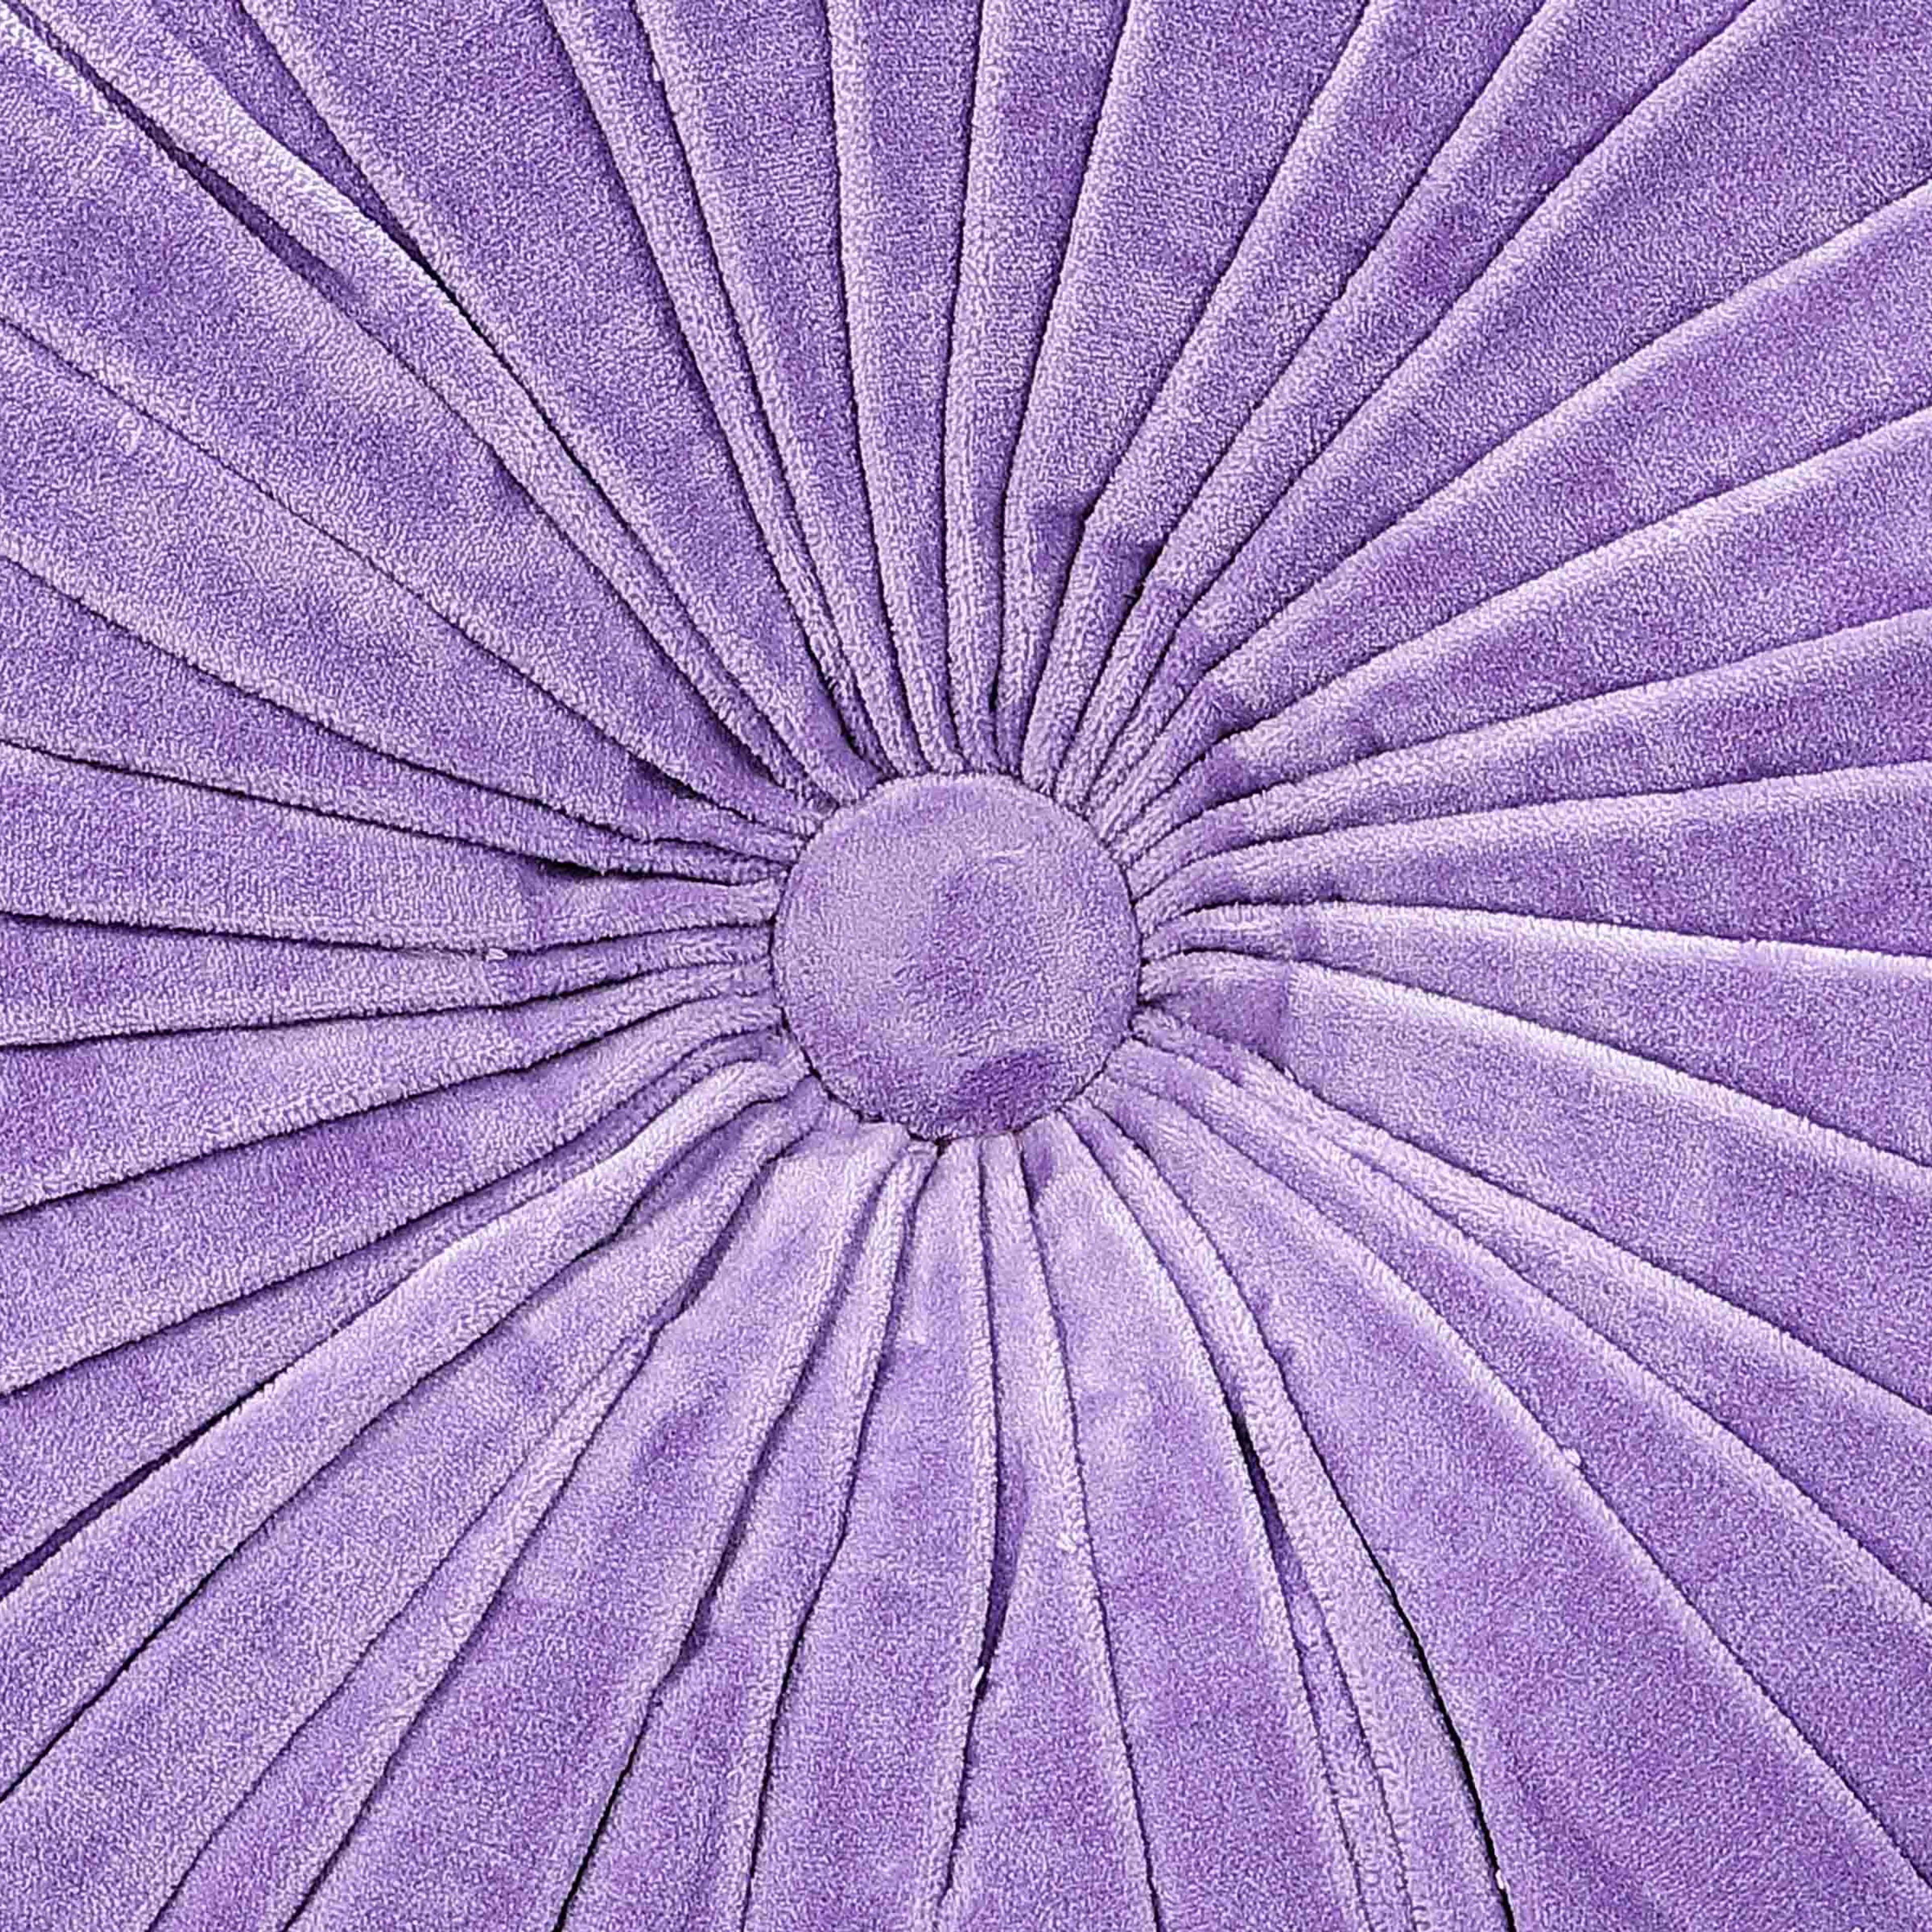 Velvet Round Handmade Pillow Purple Rose  - 16 Inch